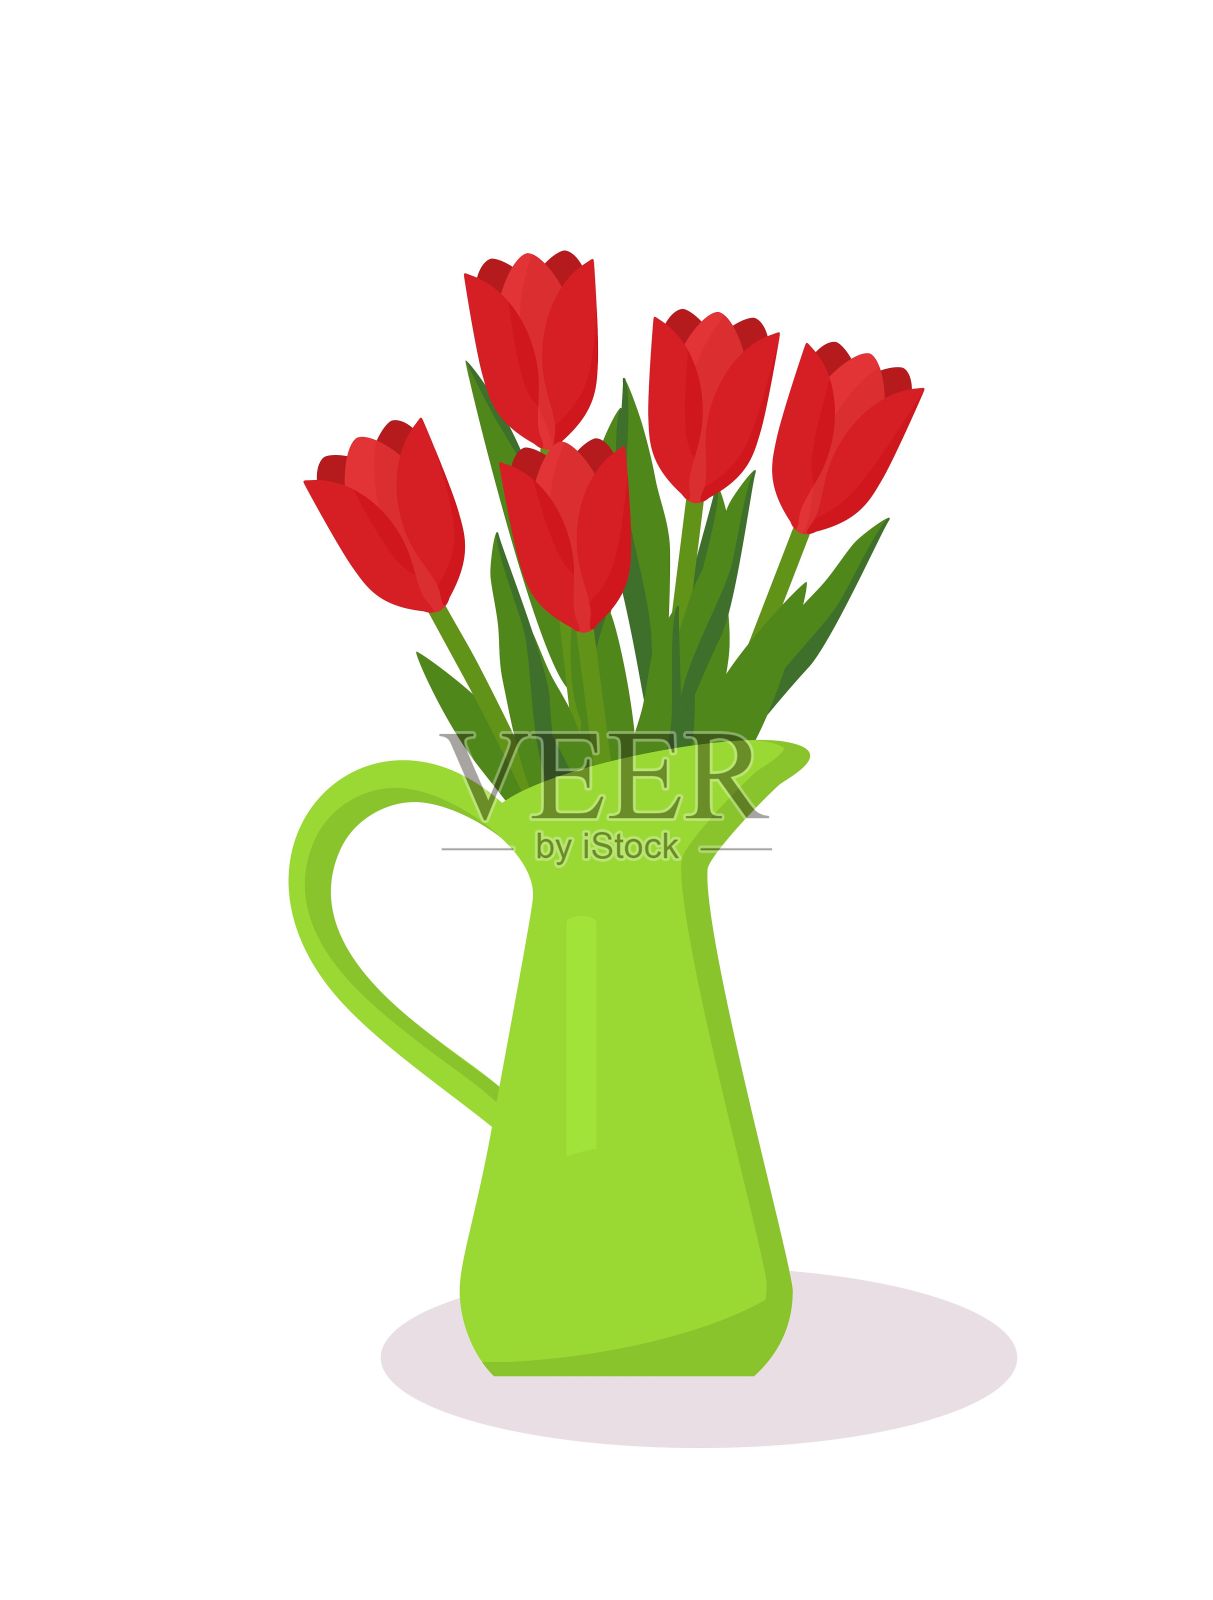 郁金香在壶的概念设计。红色郁金香花束。设计元素图片